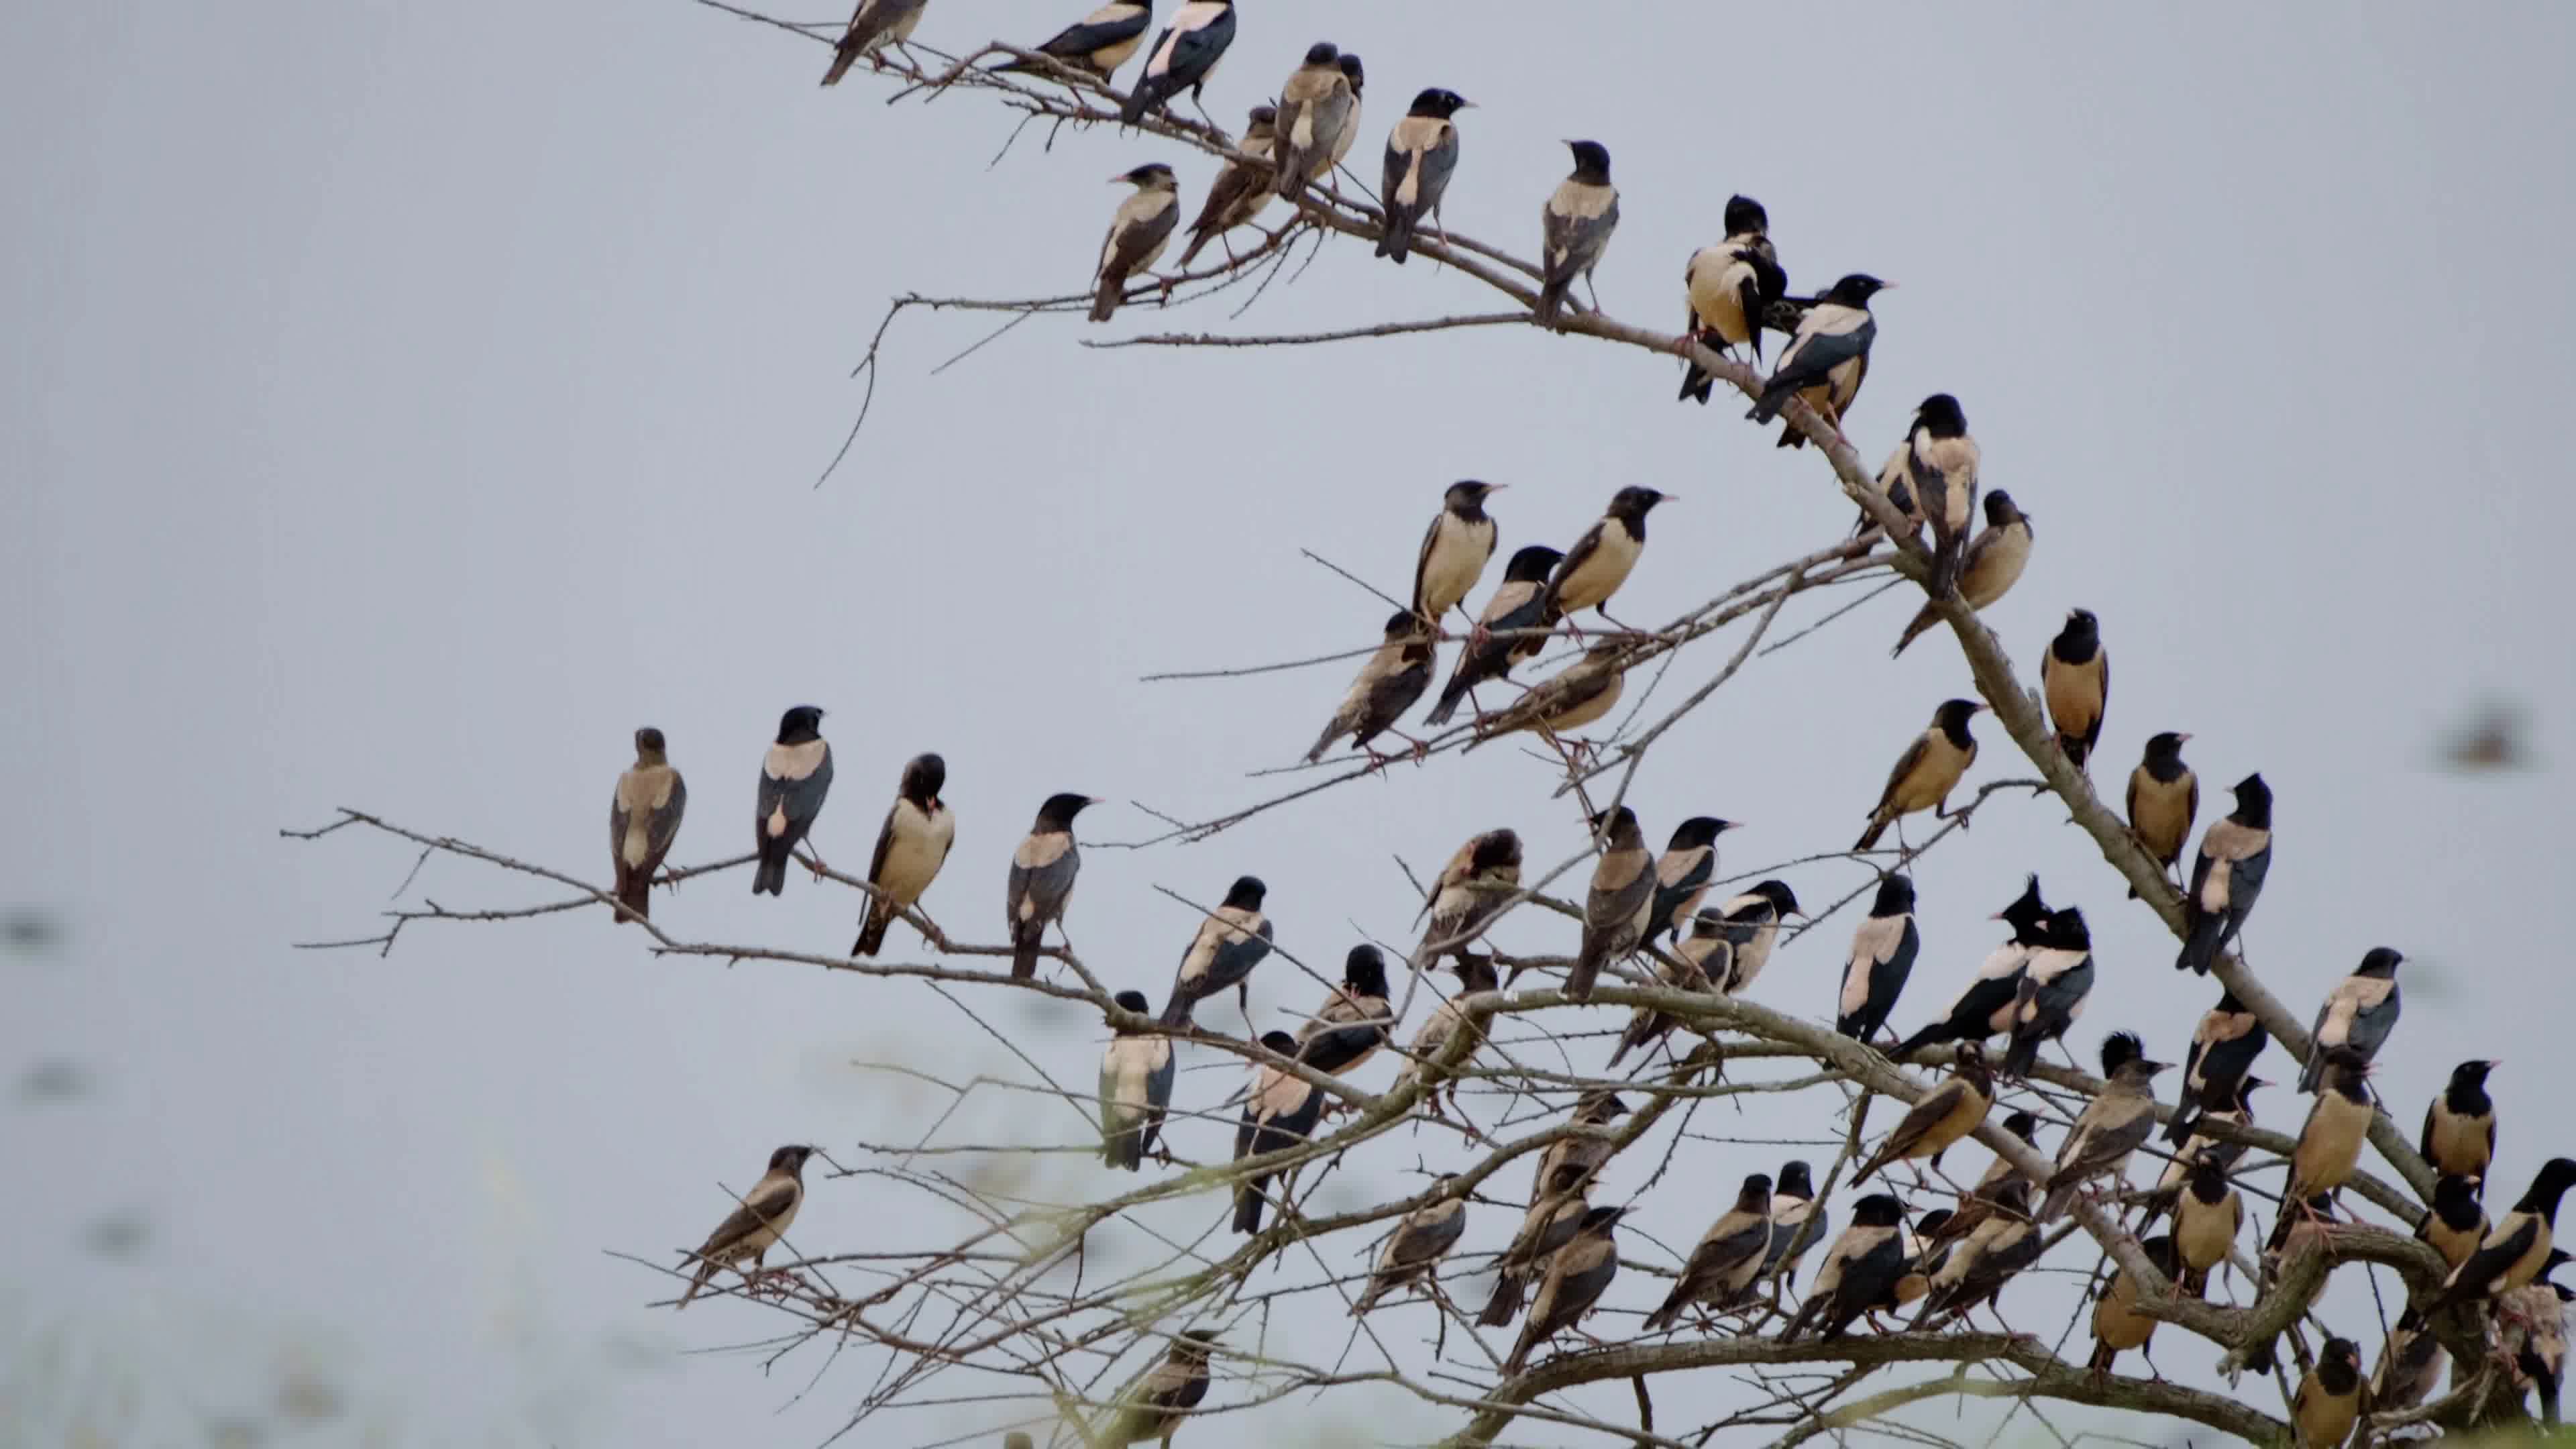 群鸟展翅高飞鸟类动物飞翔摄影图配图高清摄影大图-千库网